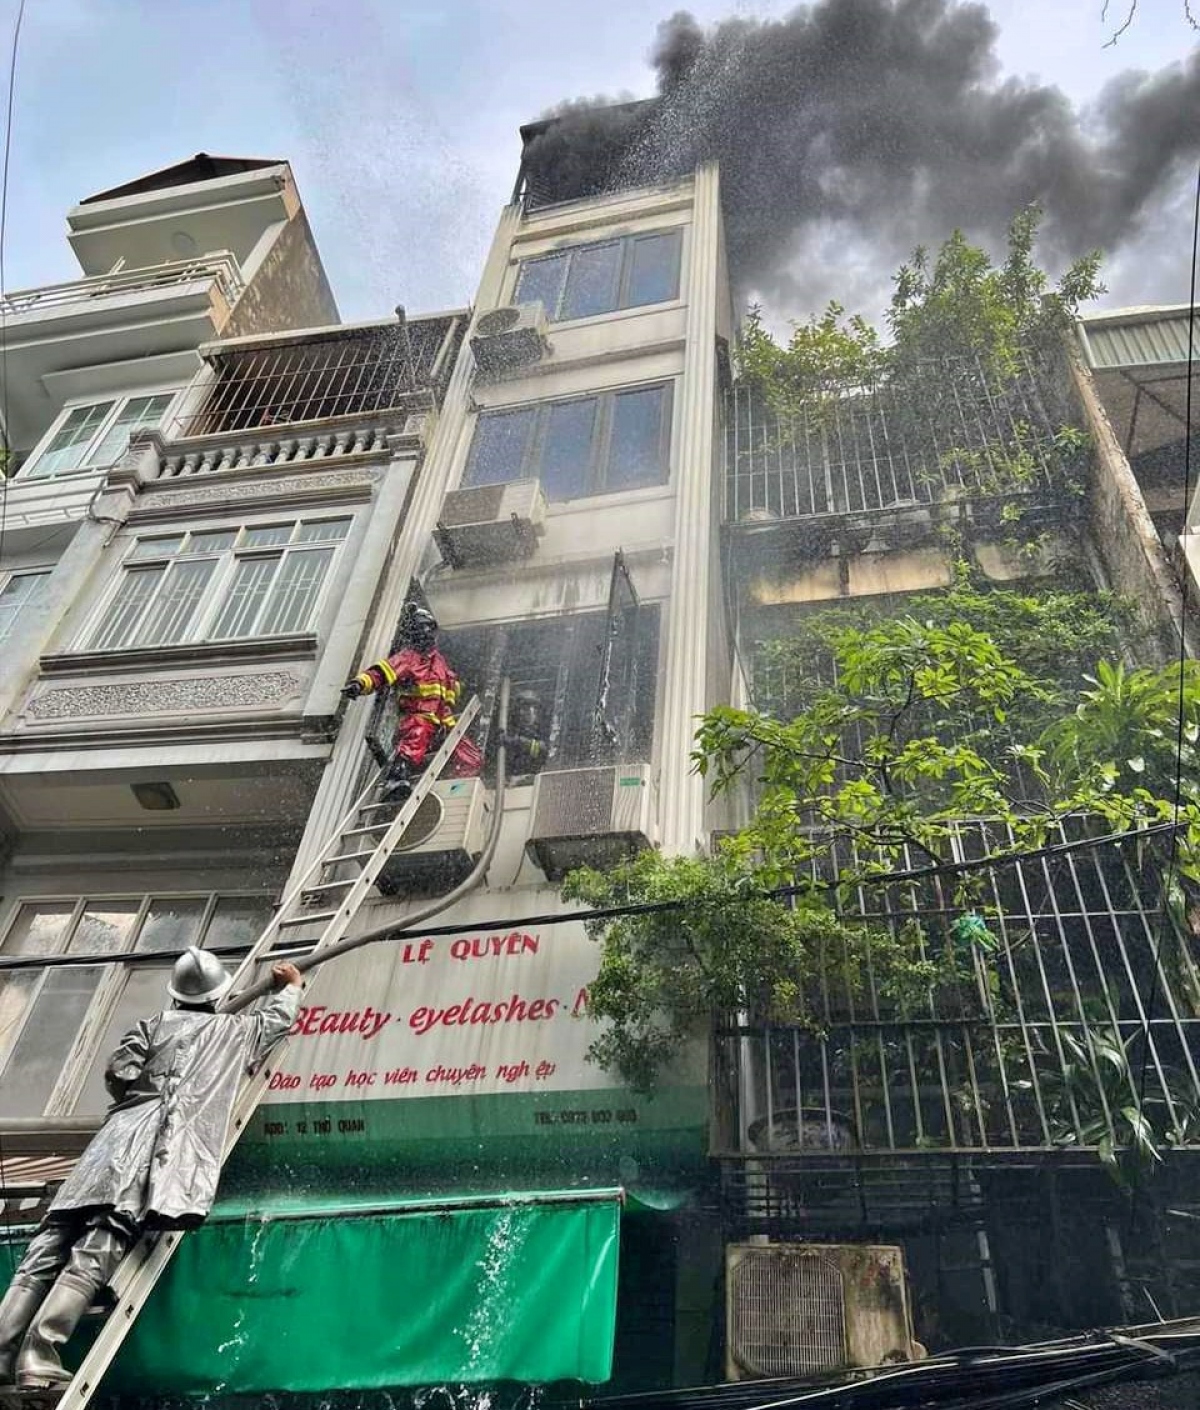 3 nạn nhân trong vụ cháy ở Hà Nội là con và cháu của chủ nhà - Ảnh 2.